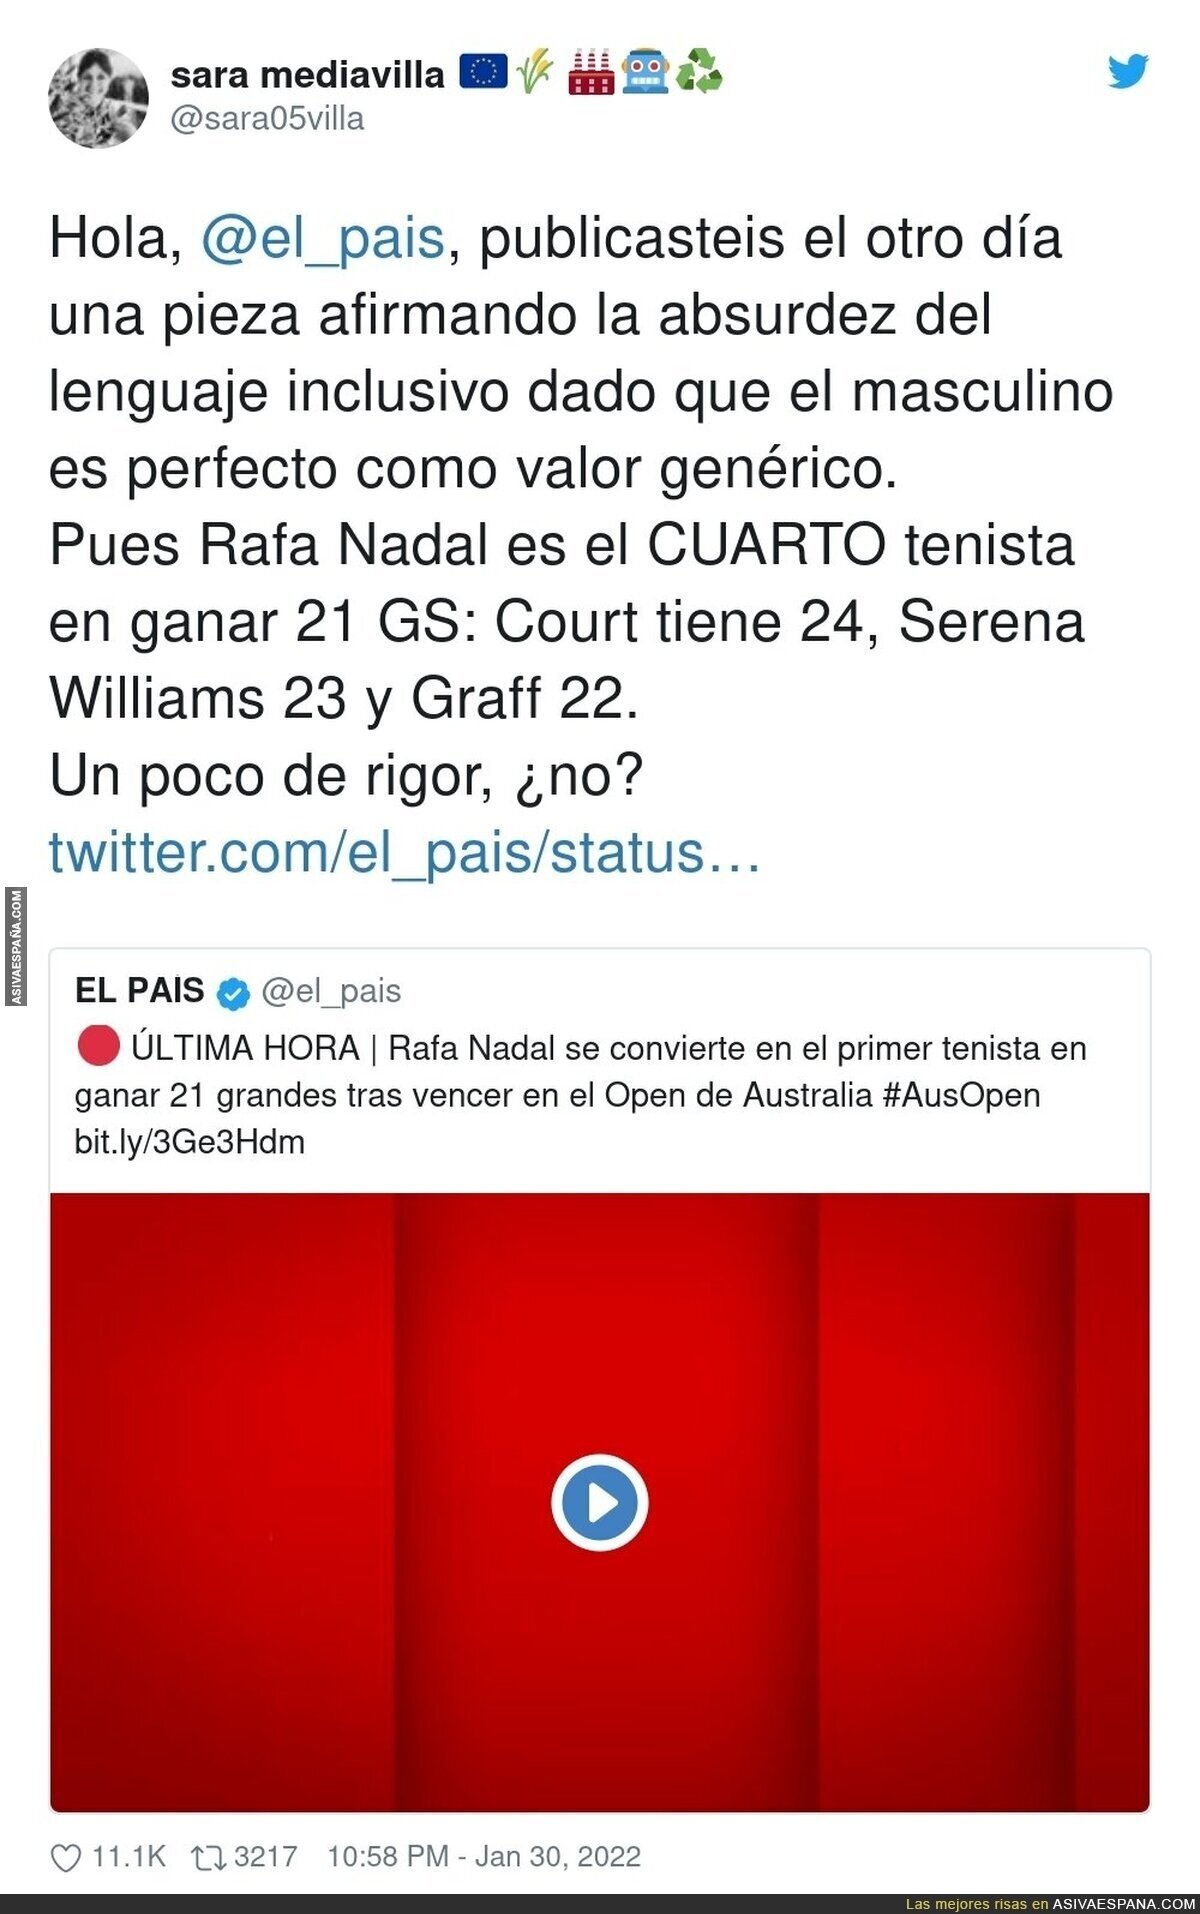 Corrigiendo a 'El País' y sus noticias sobre el tenis